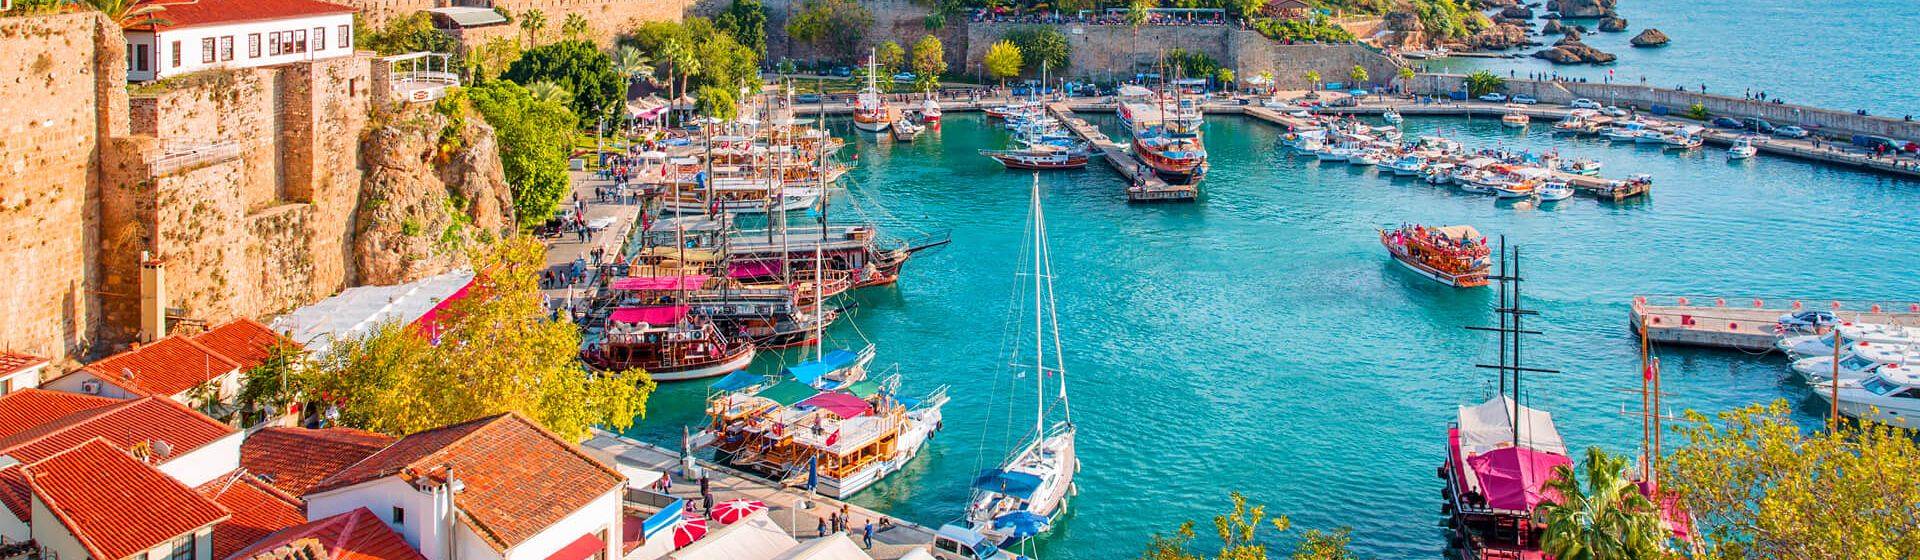 Holidays to Antalya Area Image